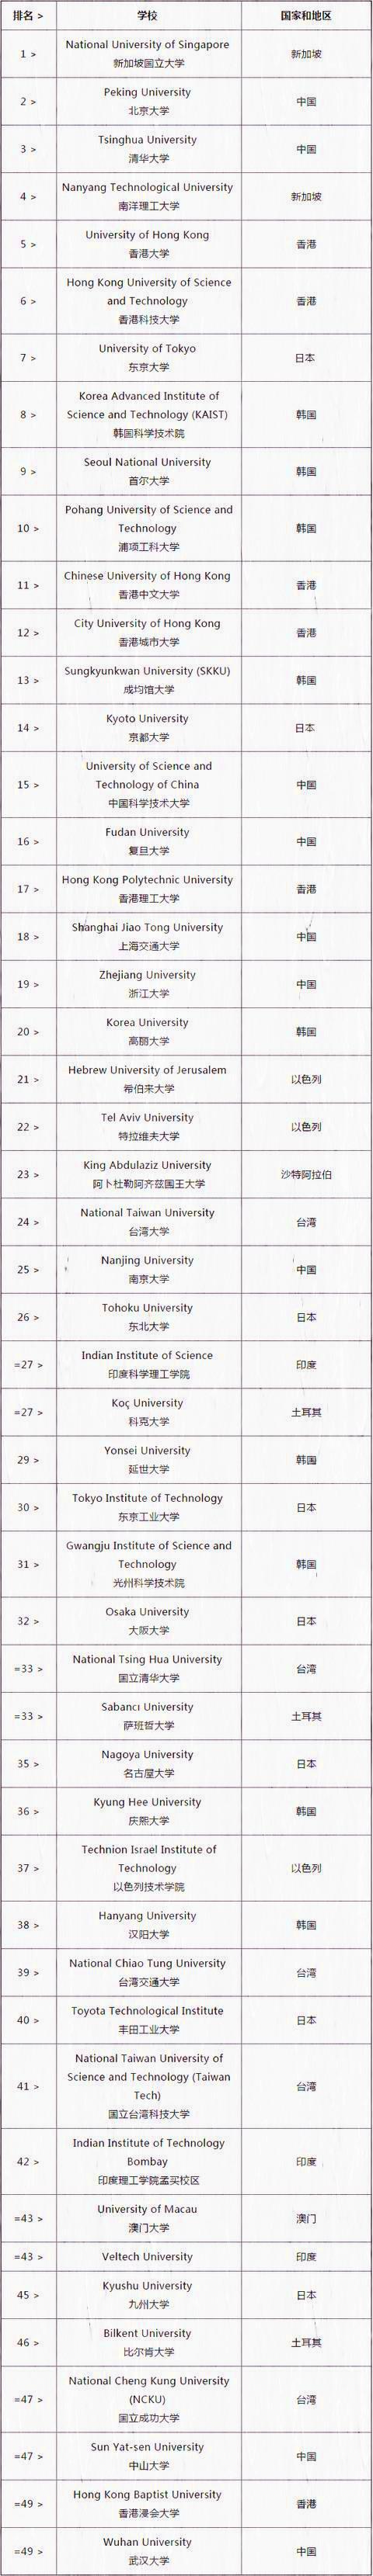 2017年亚洲顶级大学排名, “清华北大”超车日本东京大学!